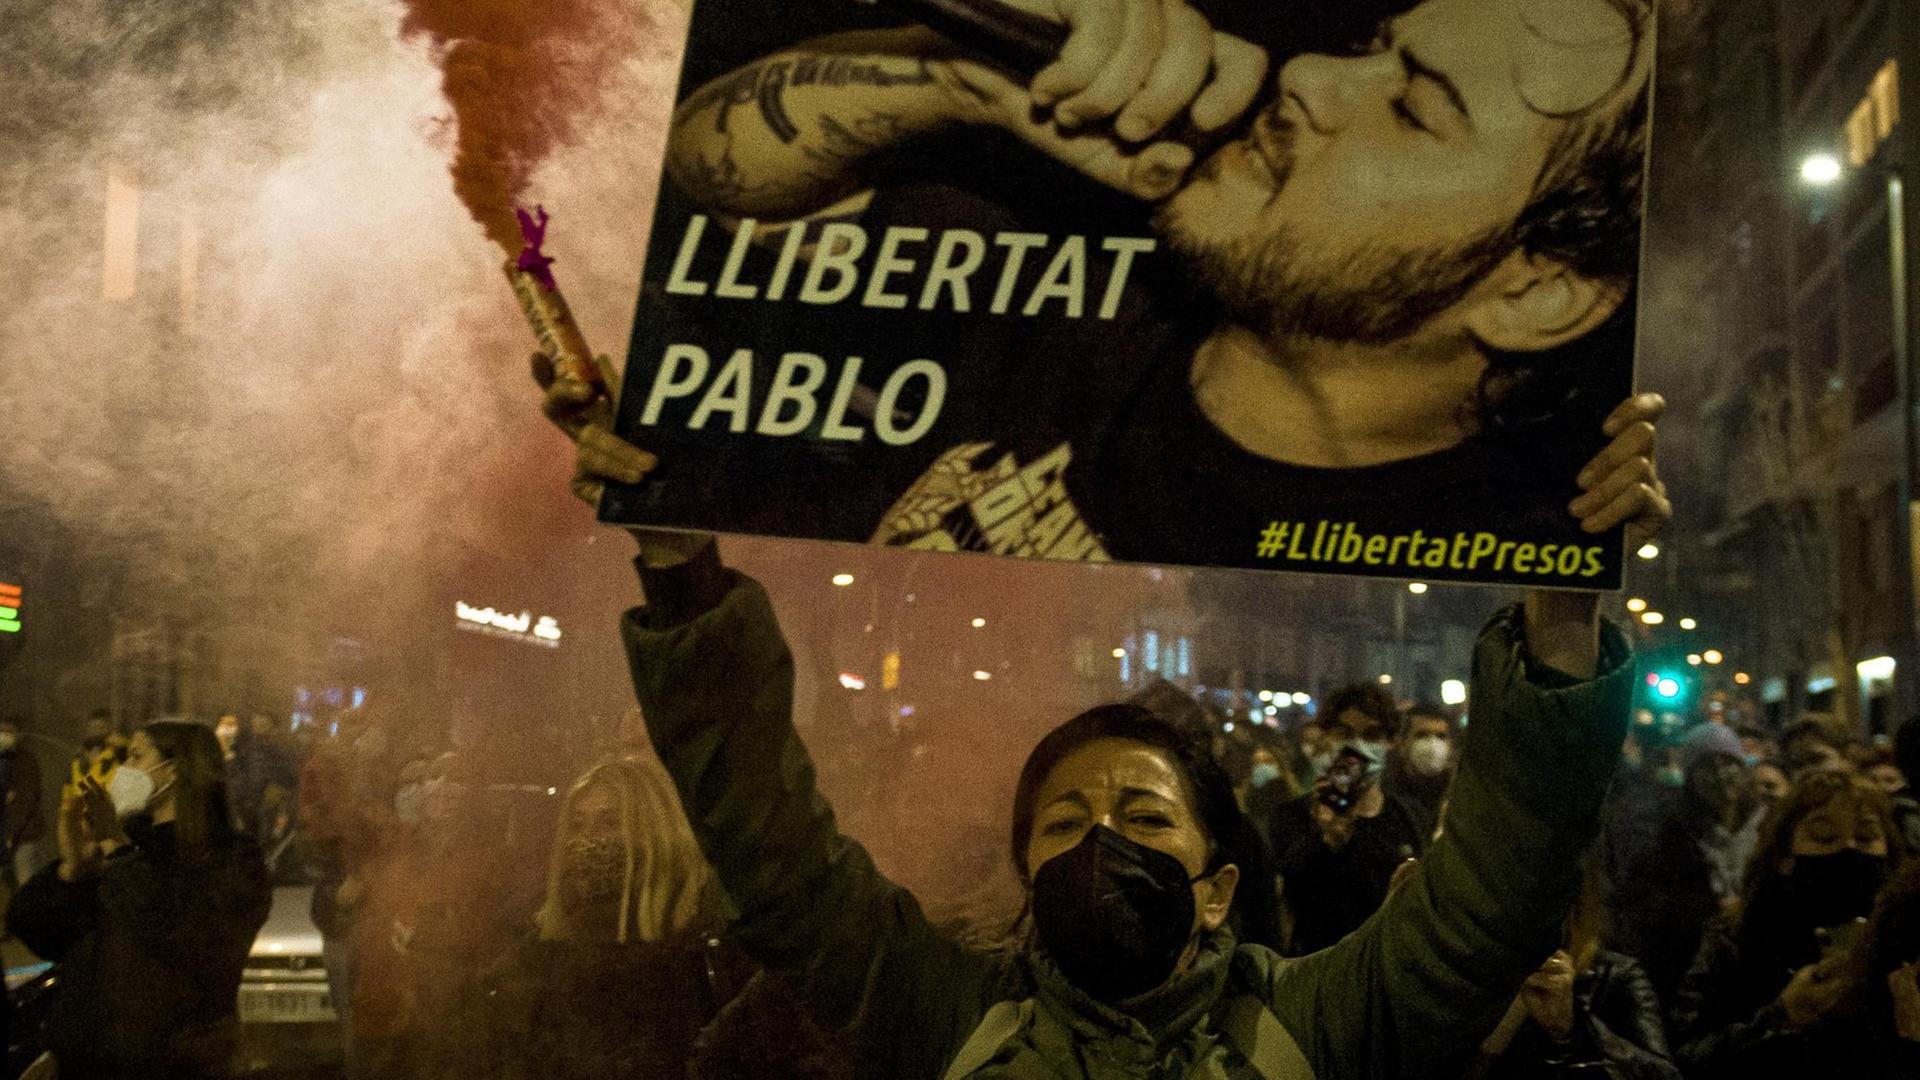 Demonstrierende in den Straßen von Barcelona fordern die Freilassung des spanischen Rappers Pablo Hasél, im Vordergrund hält eine Frau eine rote Rauchfackel und ein Plakat mit Porträt des Musikers und der Aufschrift "Llibertat Pablo" in die Höhe.